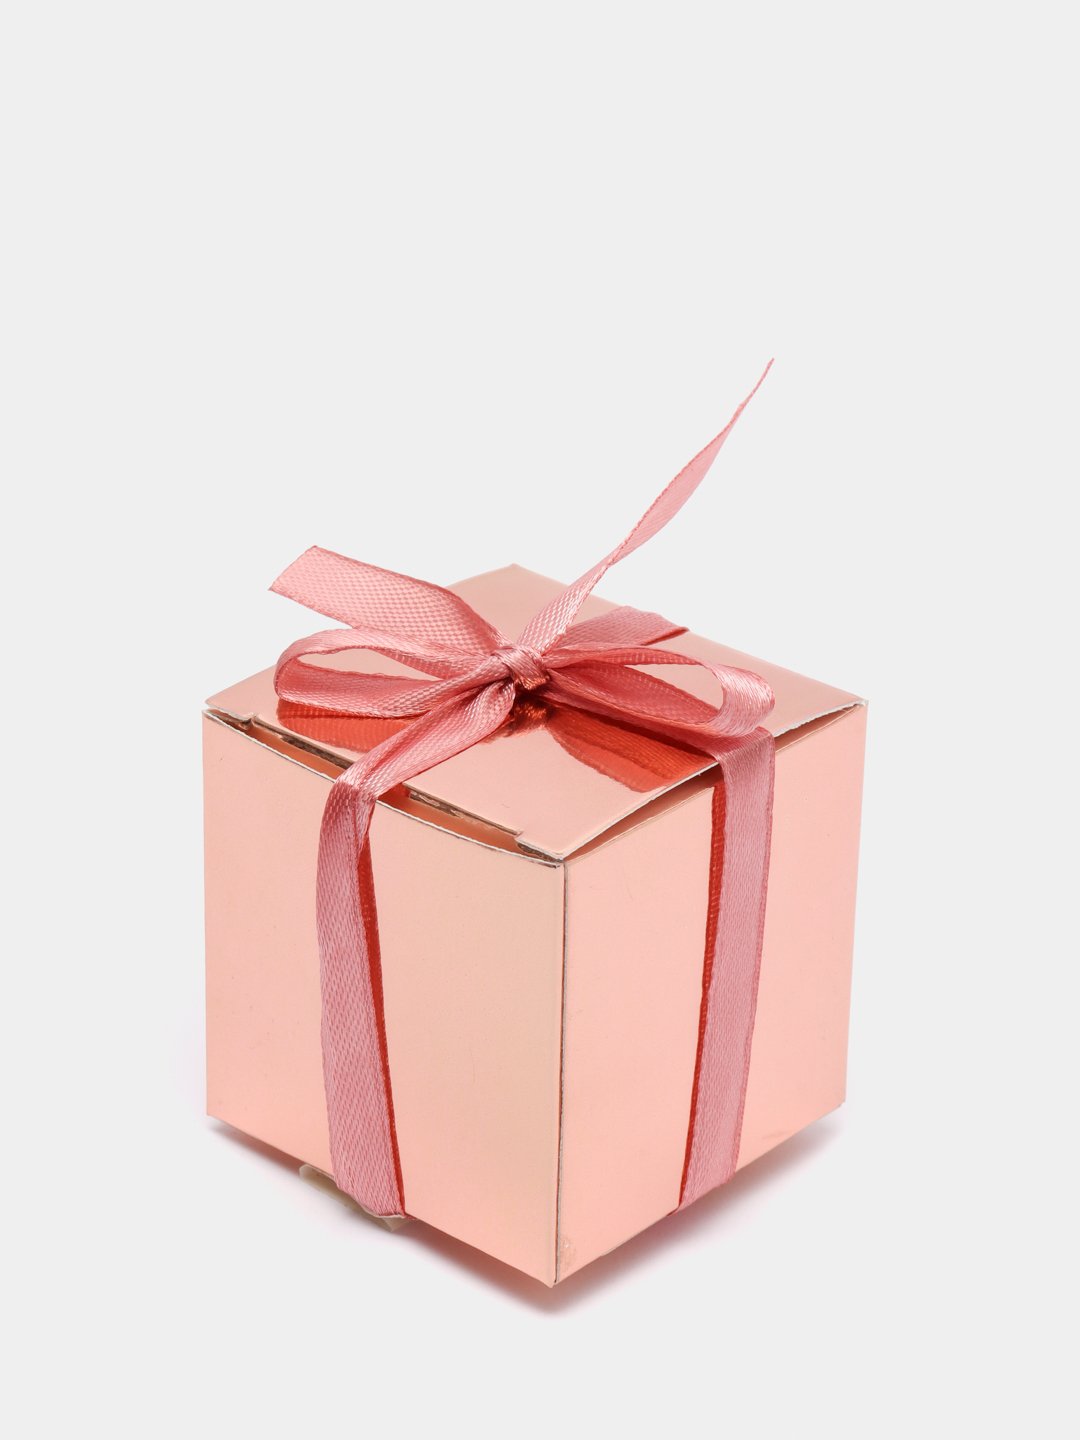 Из каких материалов делают подарочные коробки?